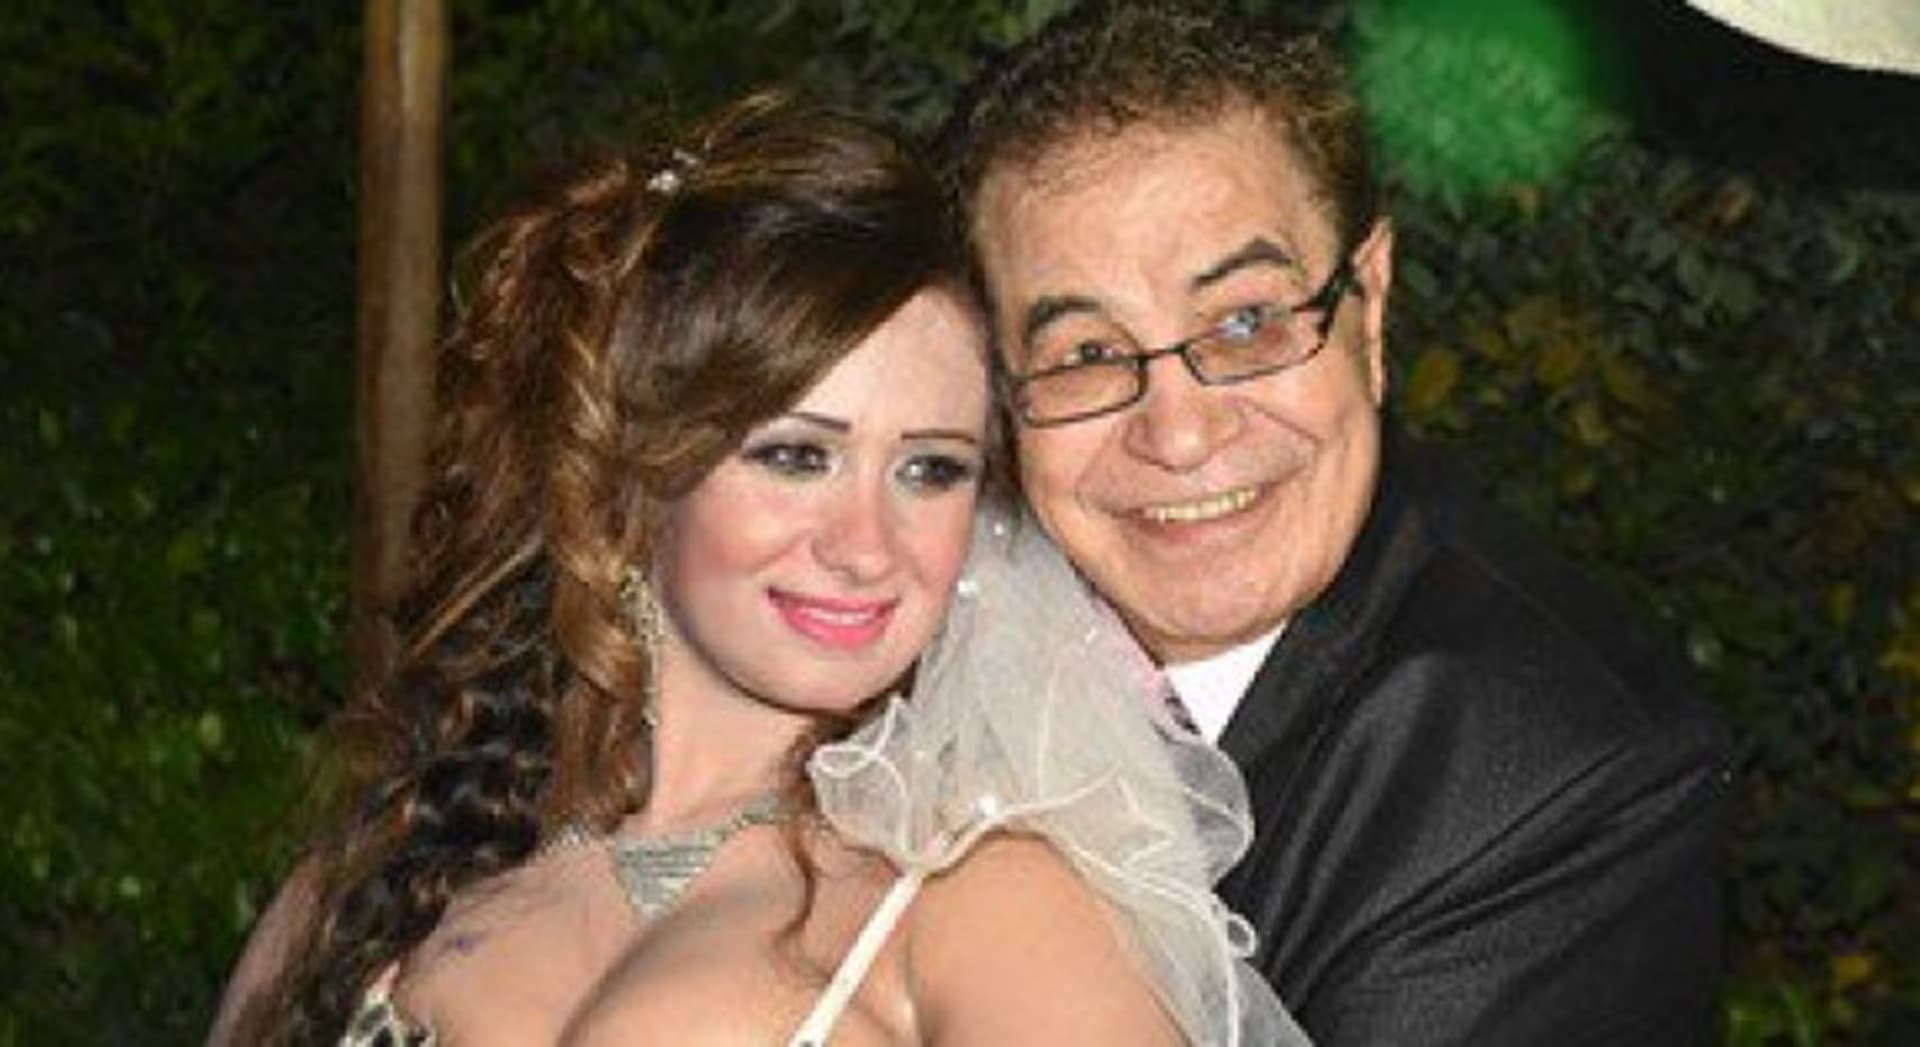 وفاة الممثل المصري سعيد طرابيك عن 74 عاما بعد شهرين من زواجه المثير للجدل Cnn Arabic